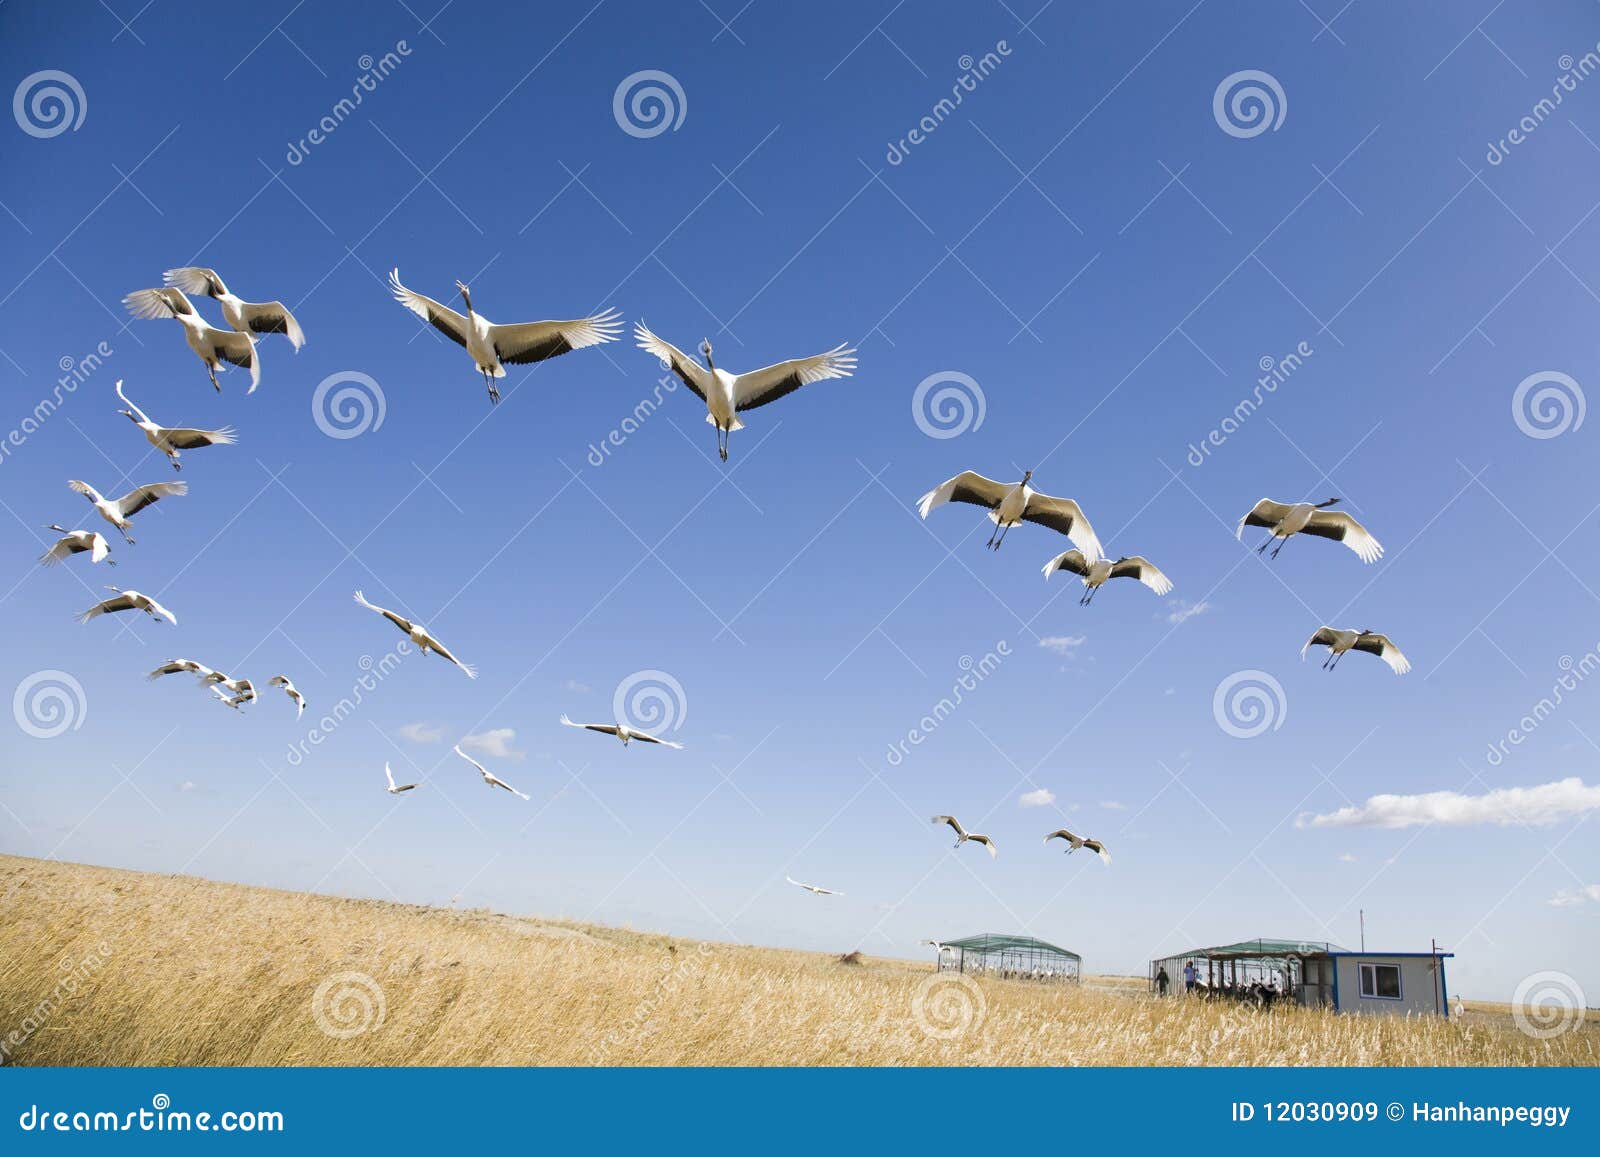 migrating cranes